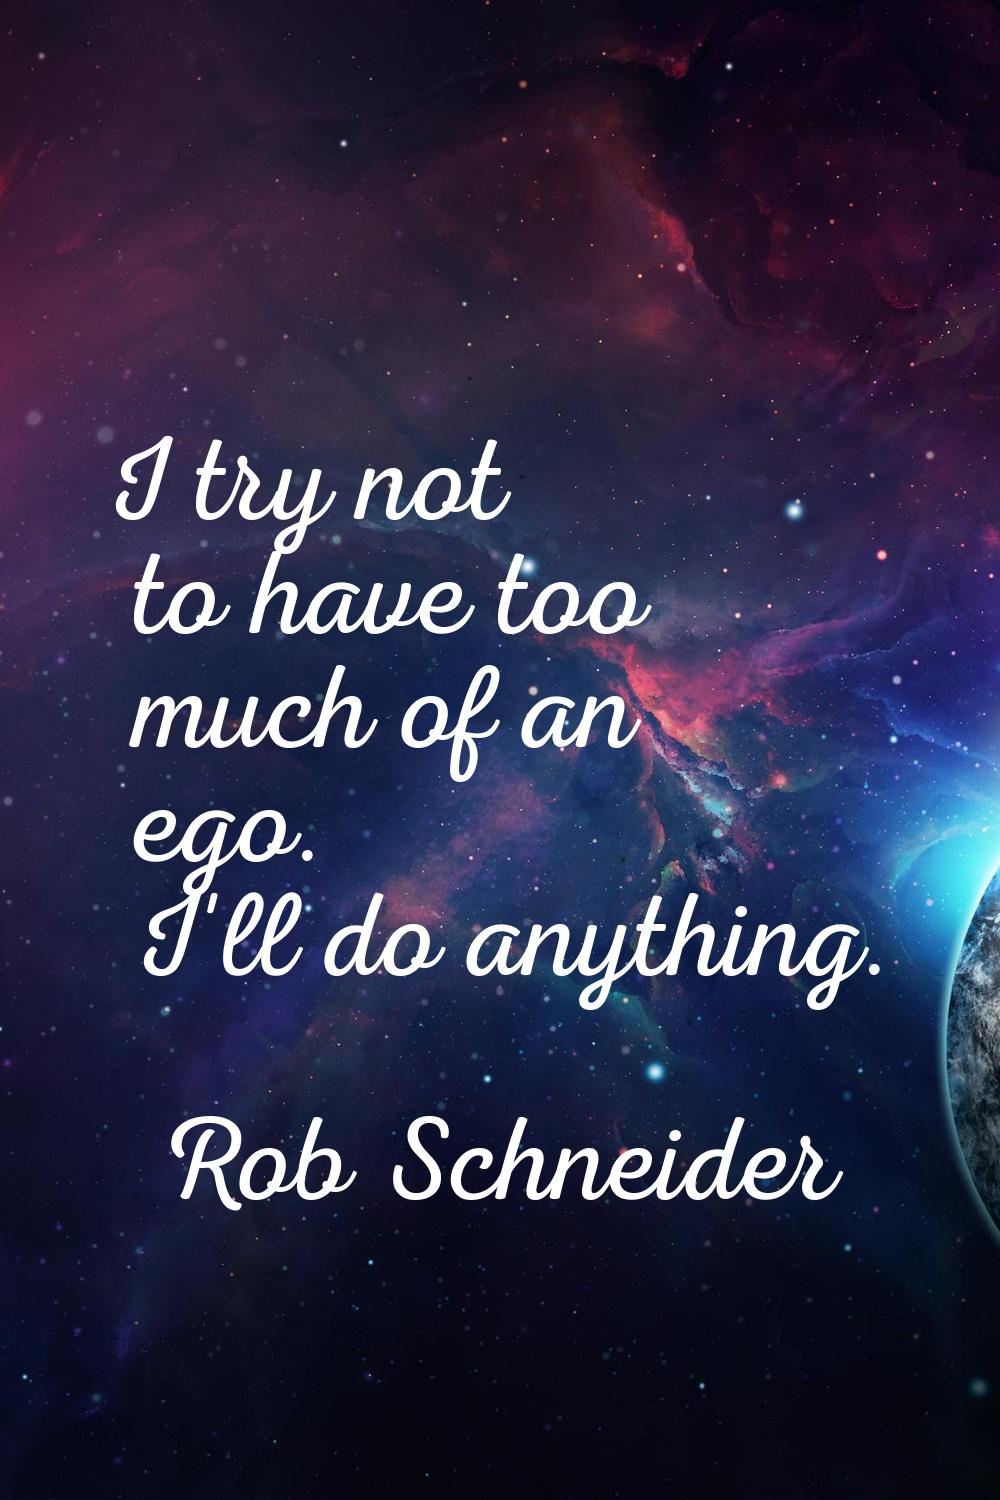 I try not to have too much of an ego. I'll do anything.